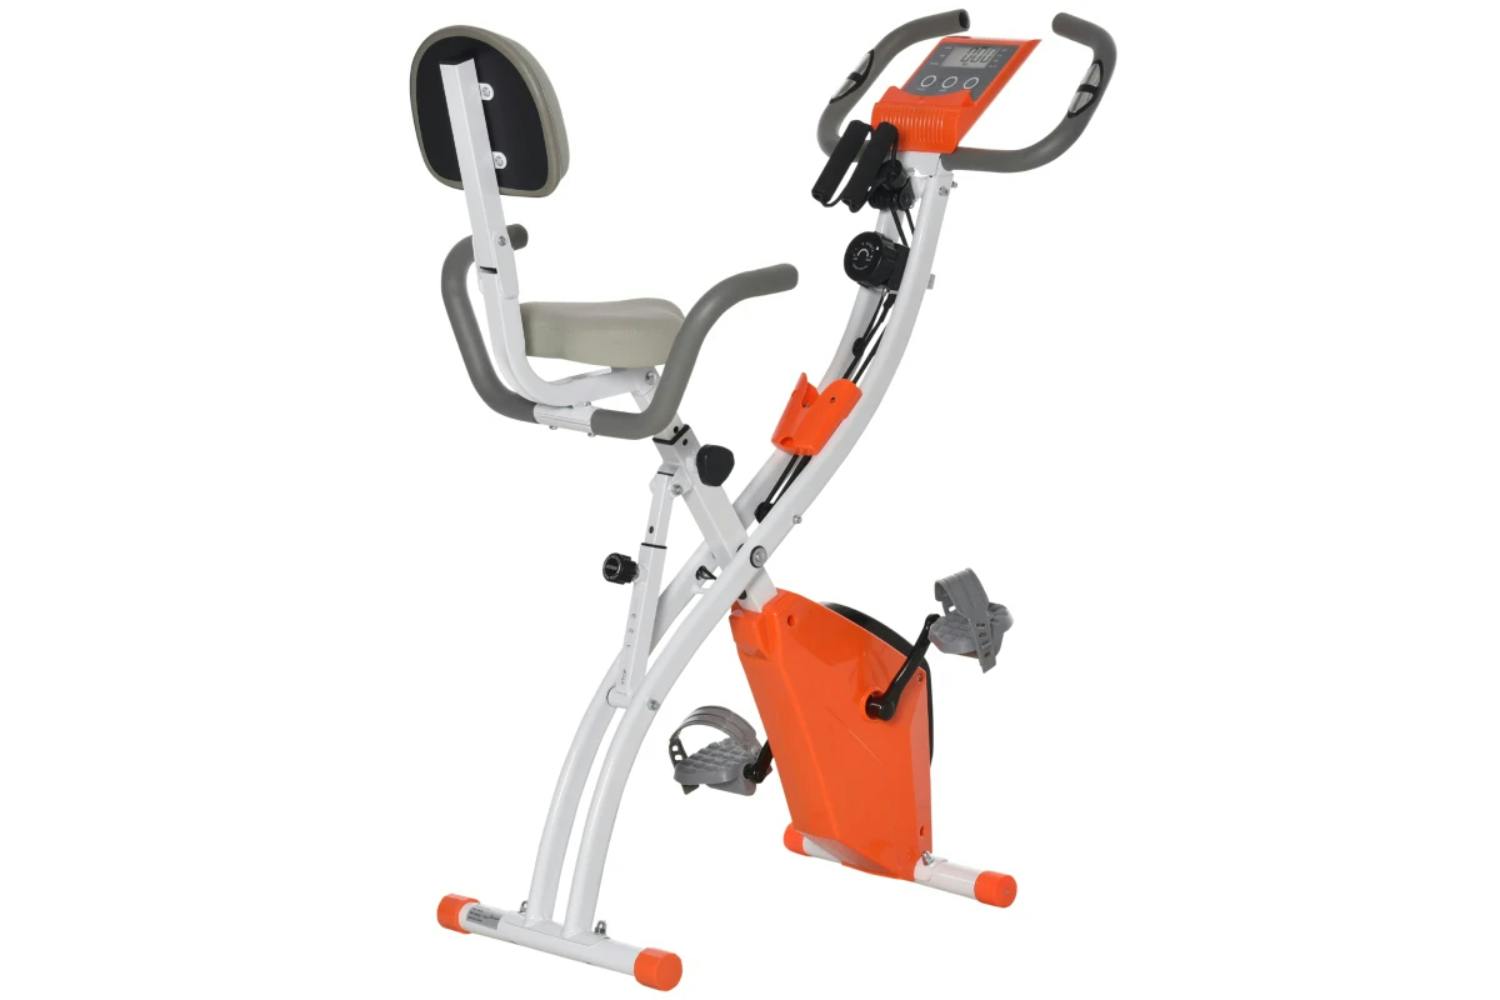 Homcom A90-196OG Folding Magnetic Exercise Bike with Band | Orange,White